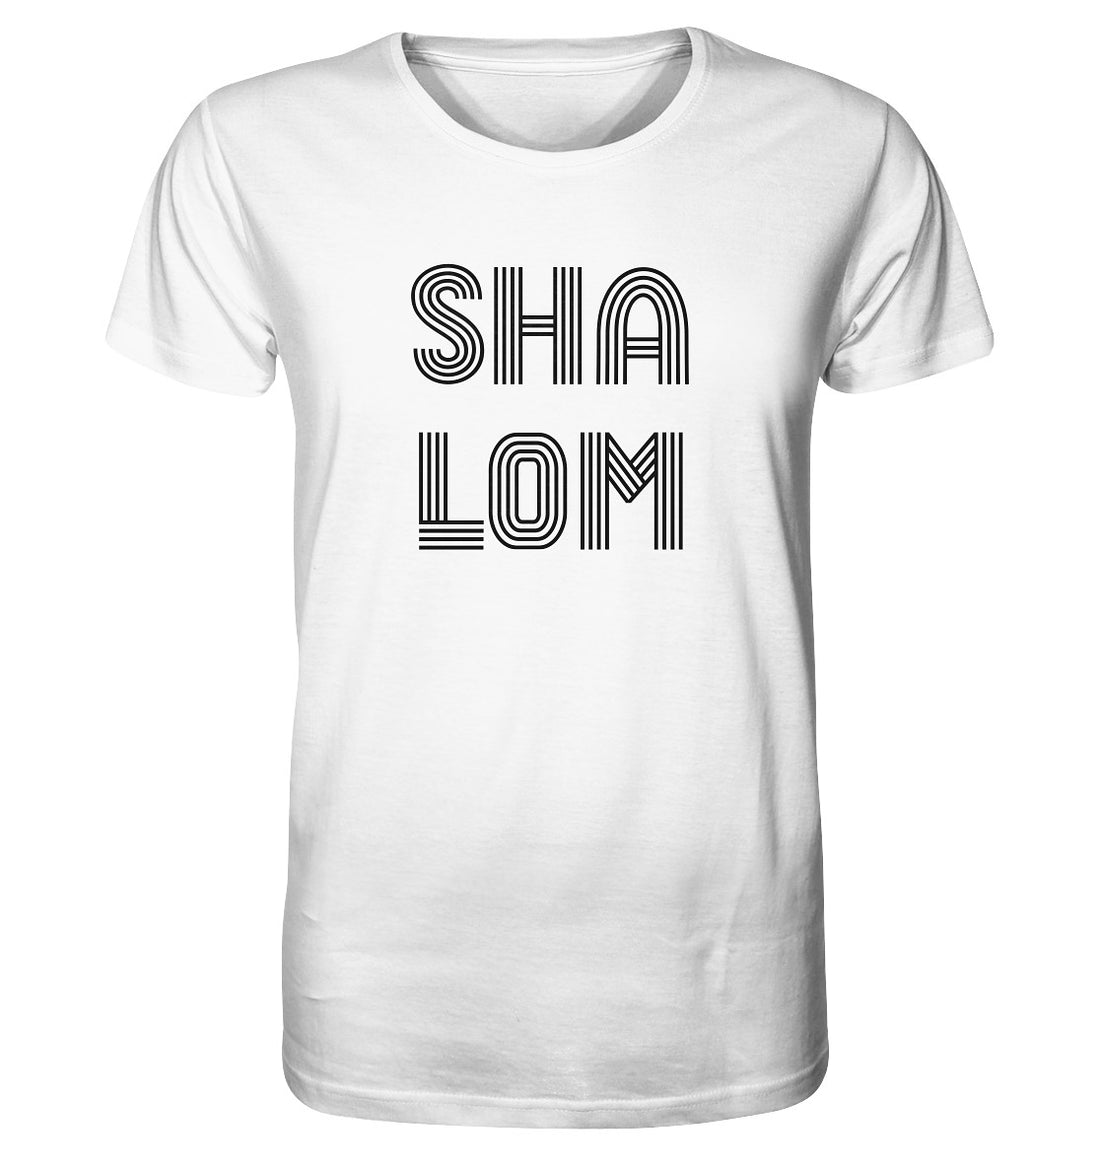 SHALOM - Organic Shirt